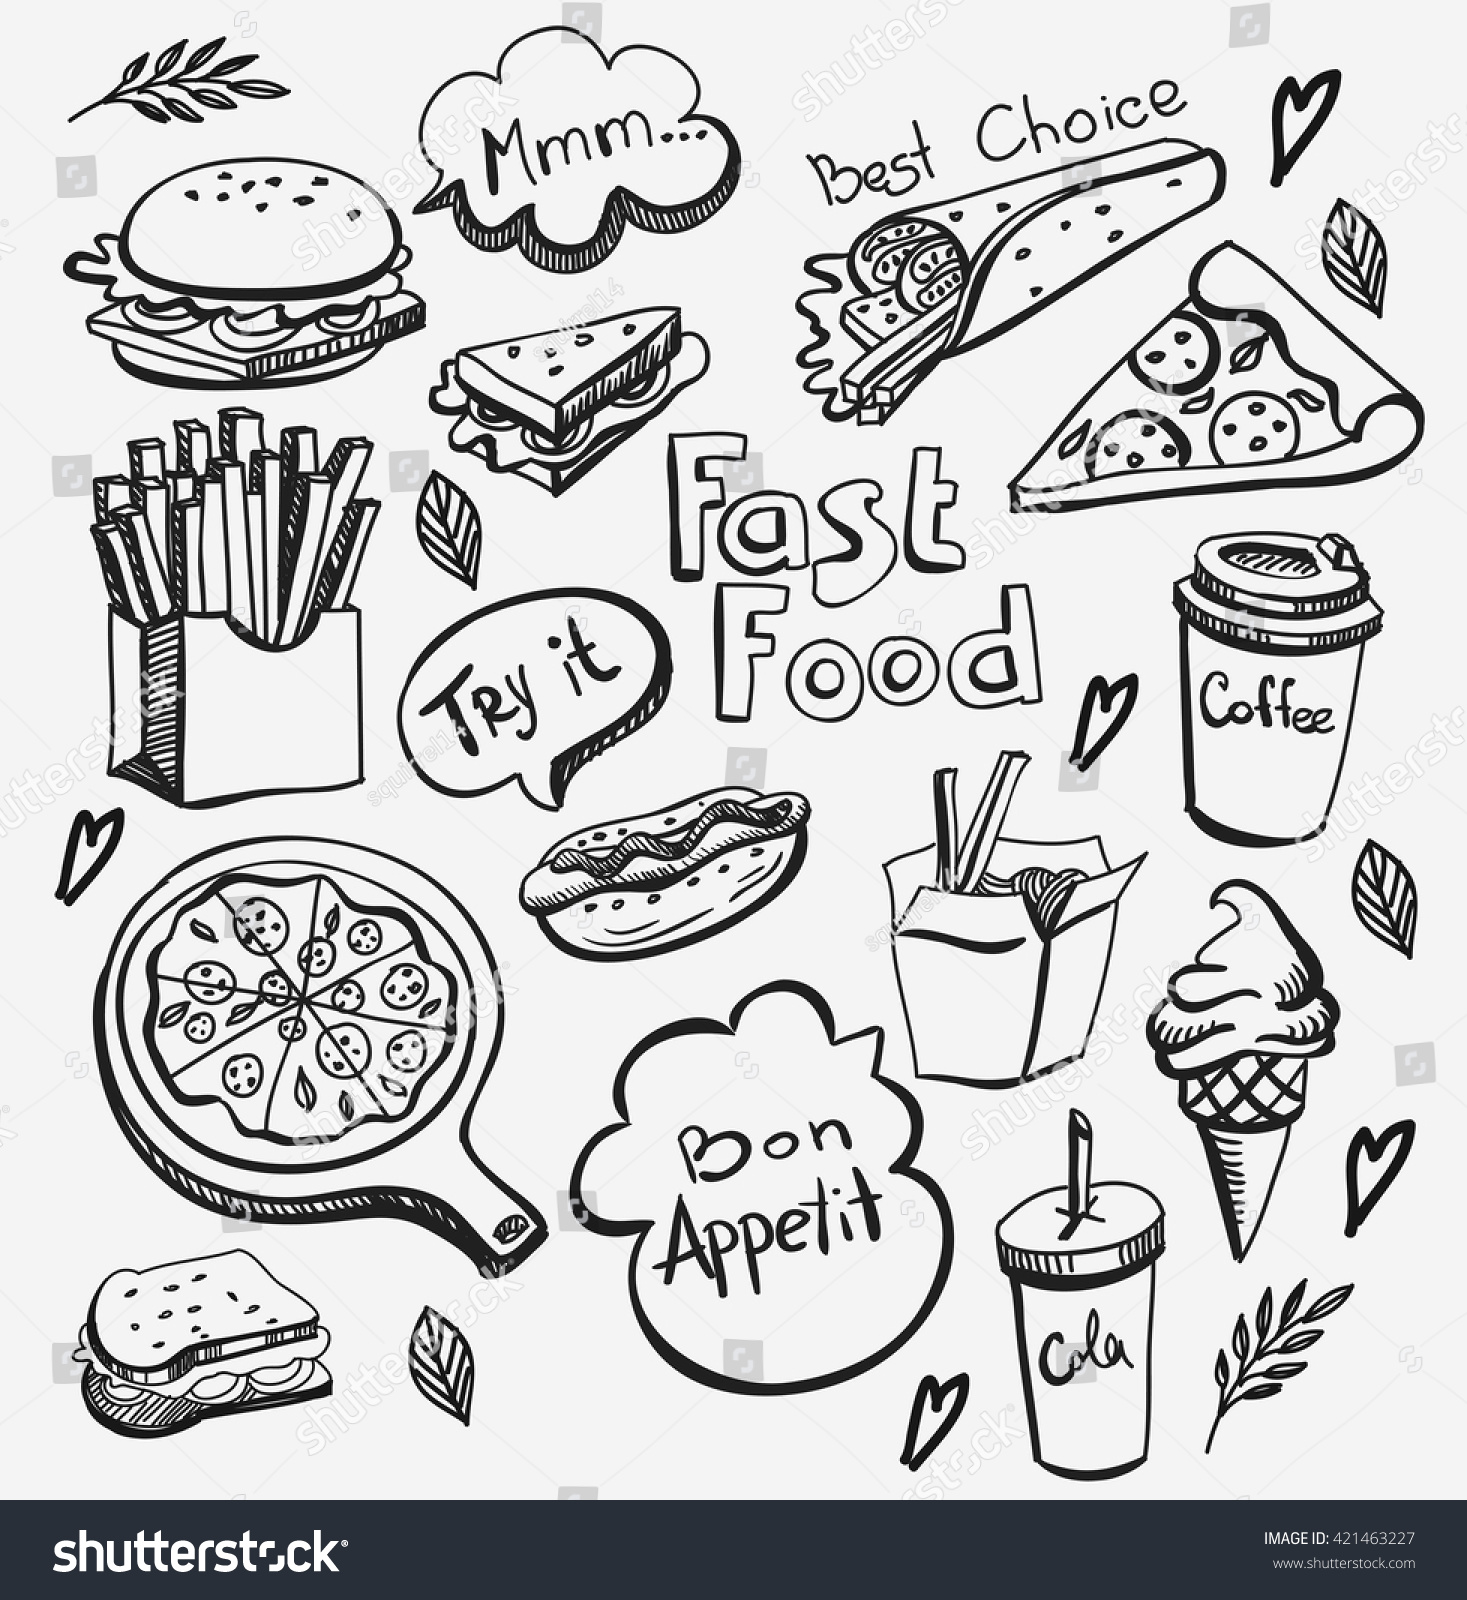 Fast Food Doodle Set Stock Vector 421463227 - Shutterstock